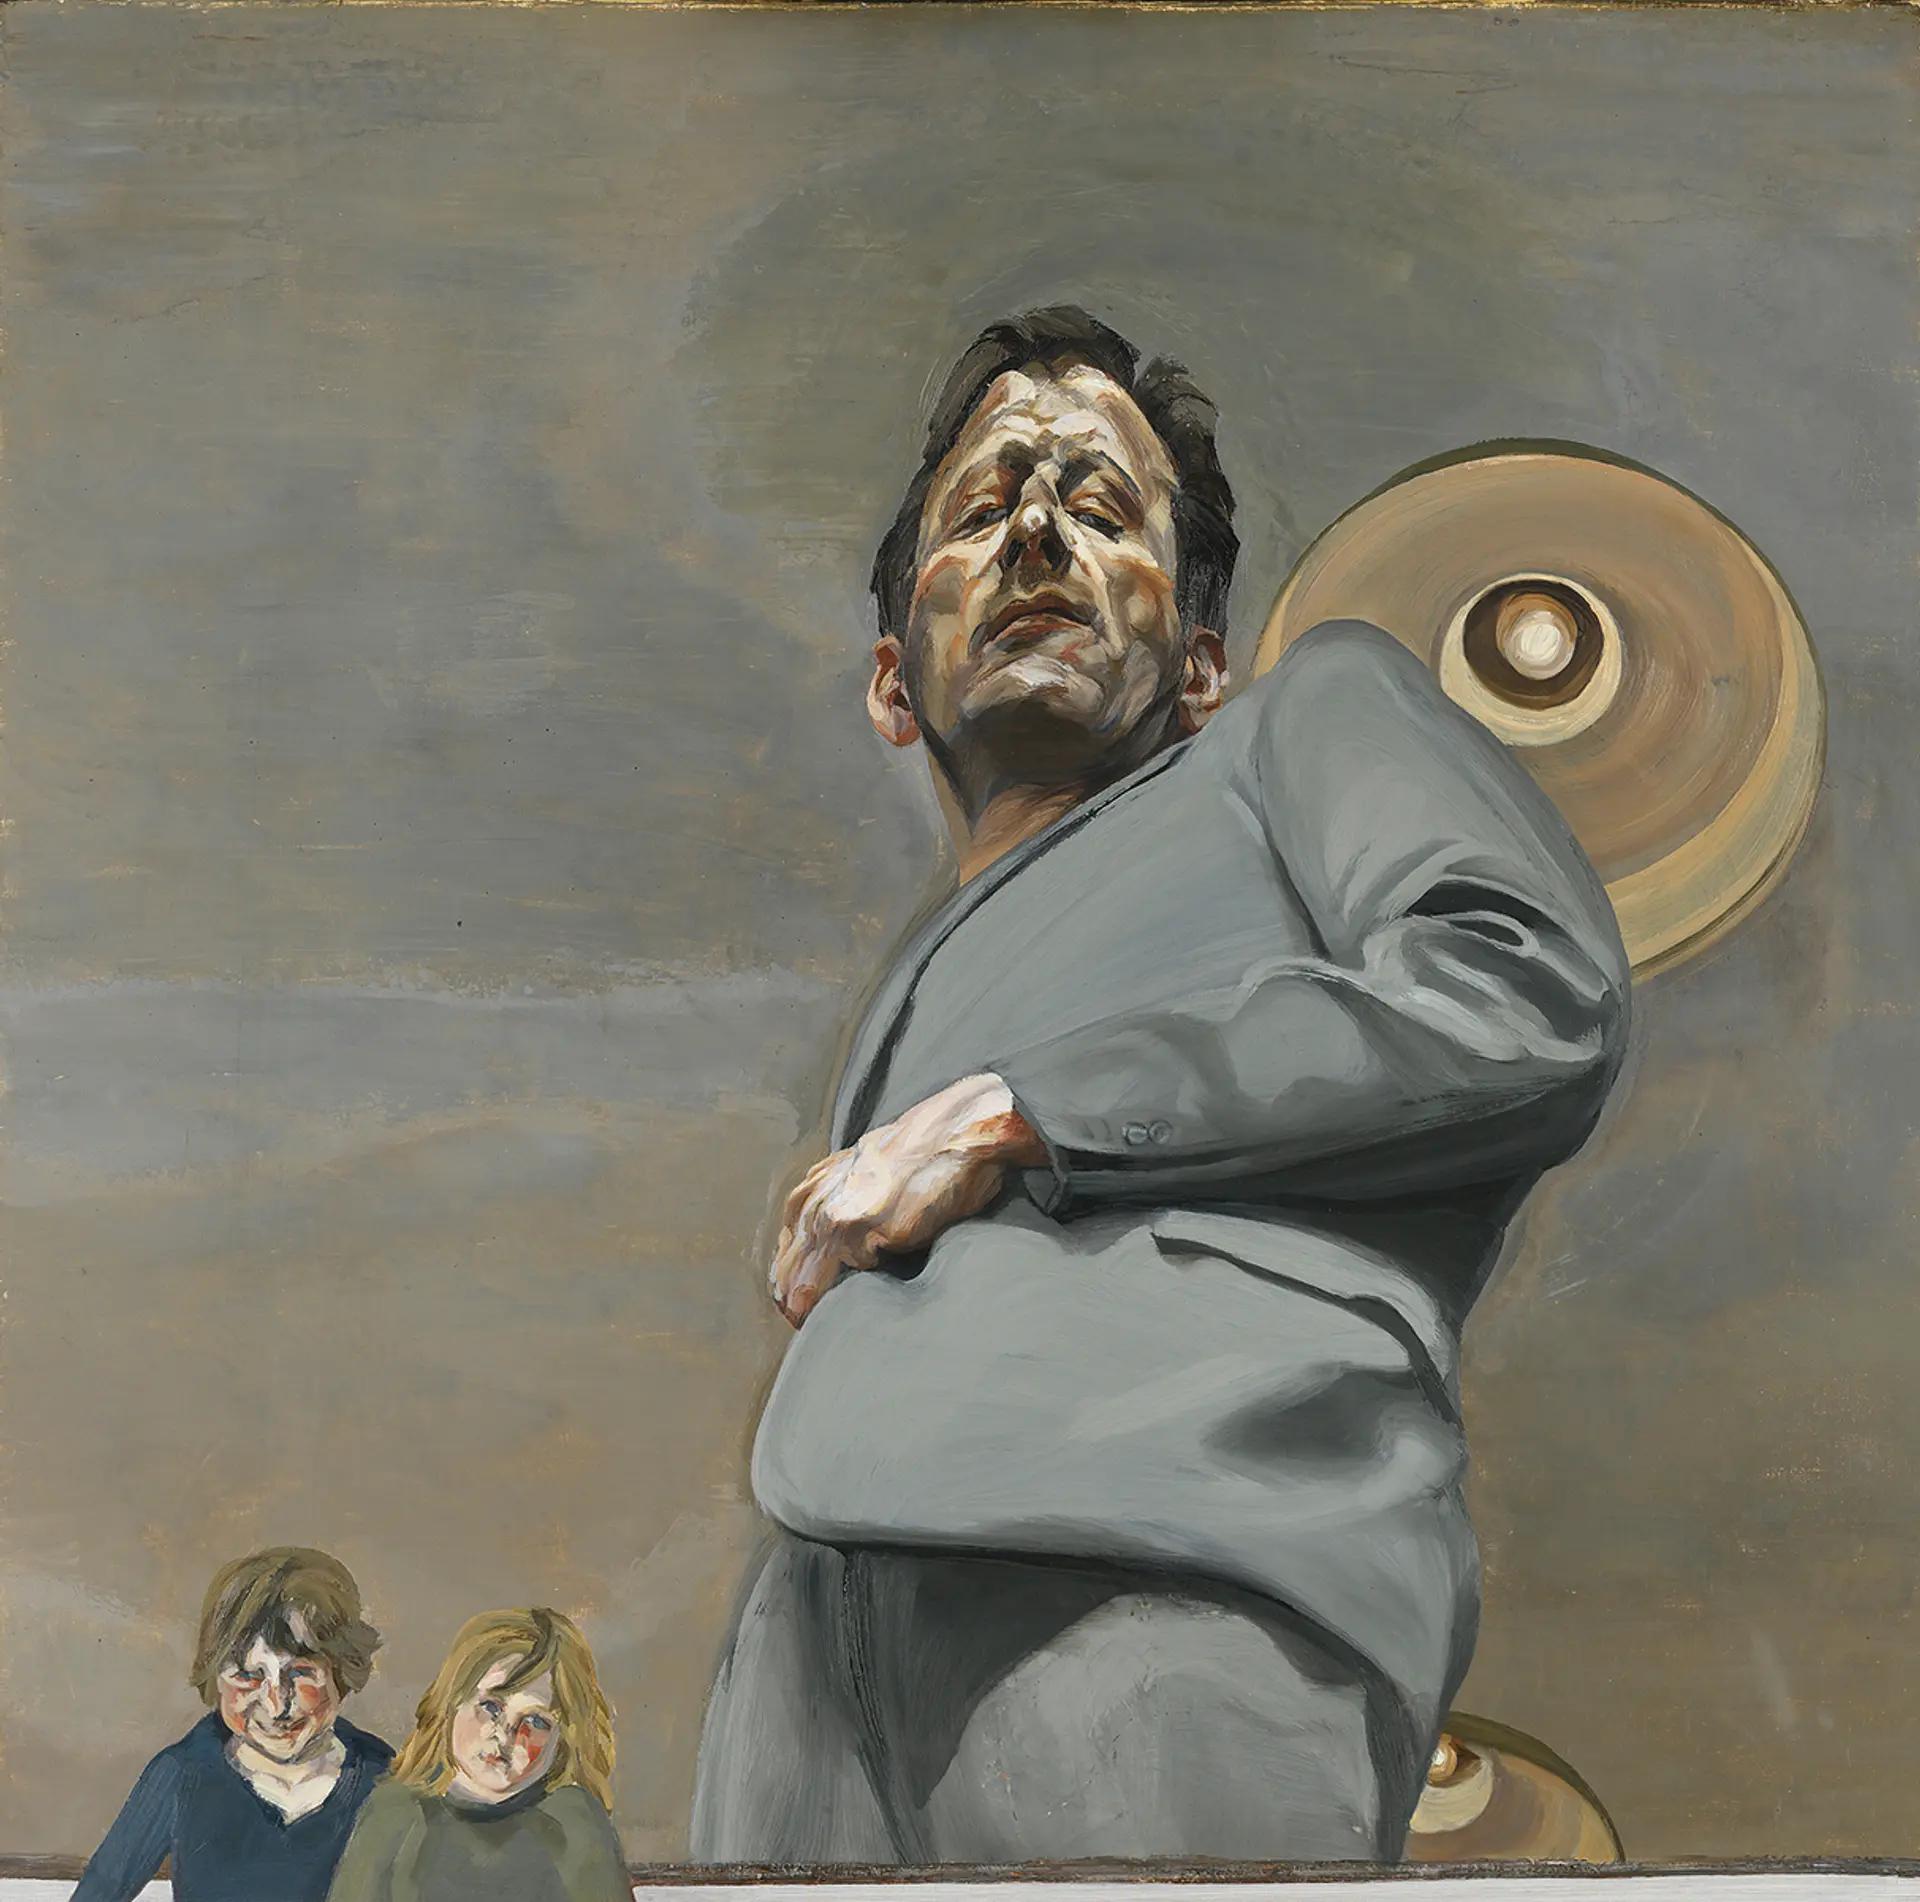 Lucian Freud, Reflection with Two Children (Self-portrait) (1965), l'une des peintures exposées à la National Gallery, à Londres. © The Lucian Freud Archive. Photo : Museo Nacional Thyssen-Bornemisza, Madrid